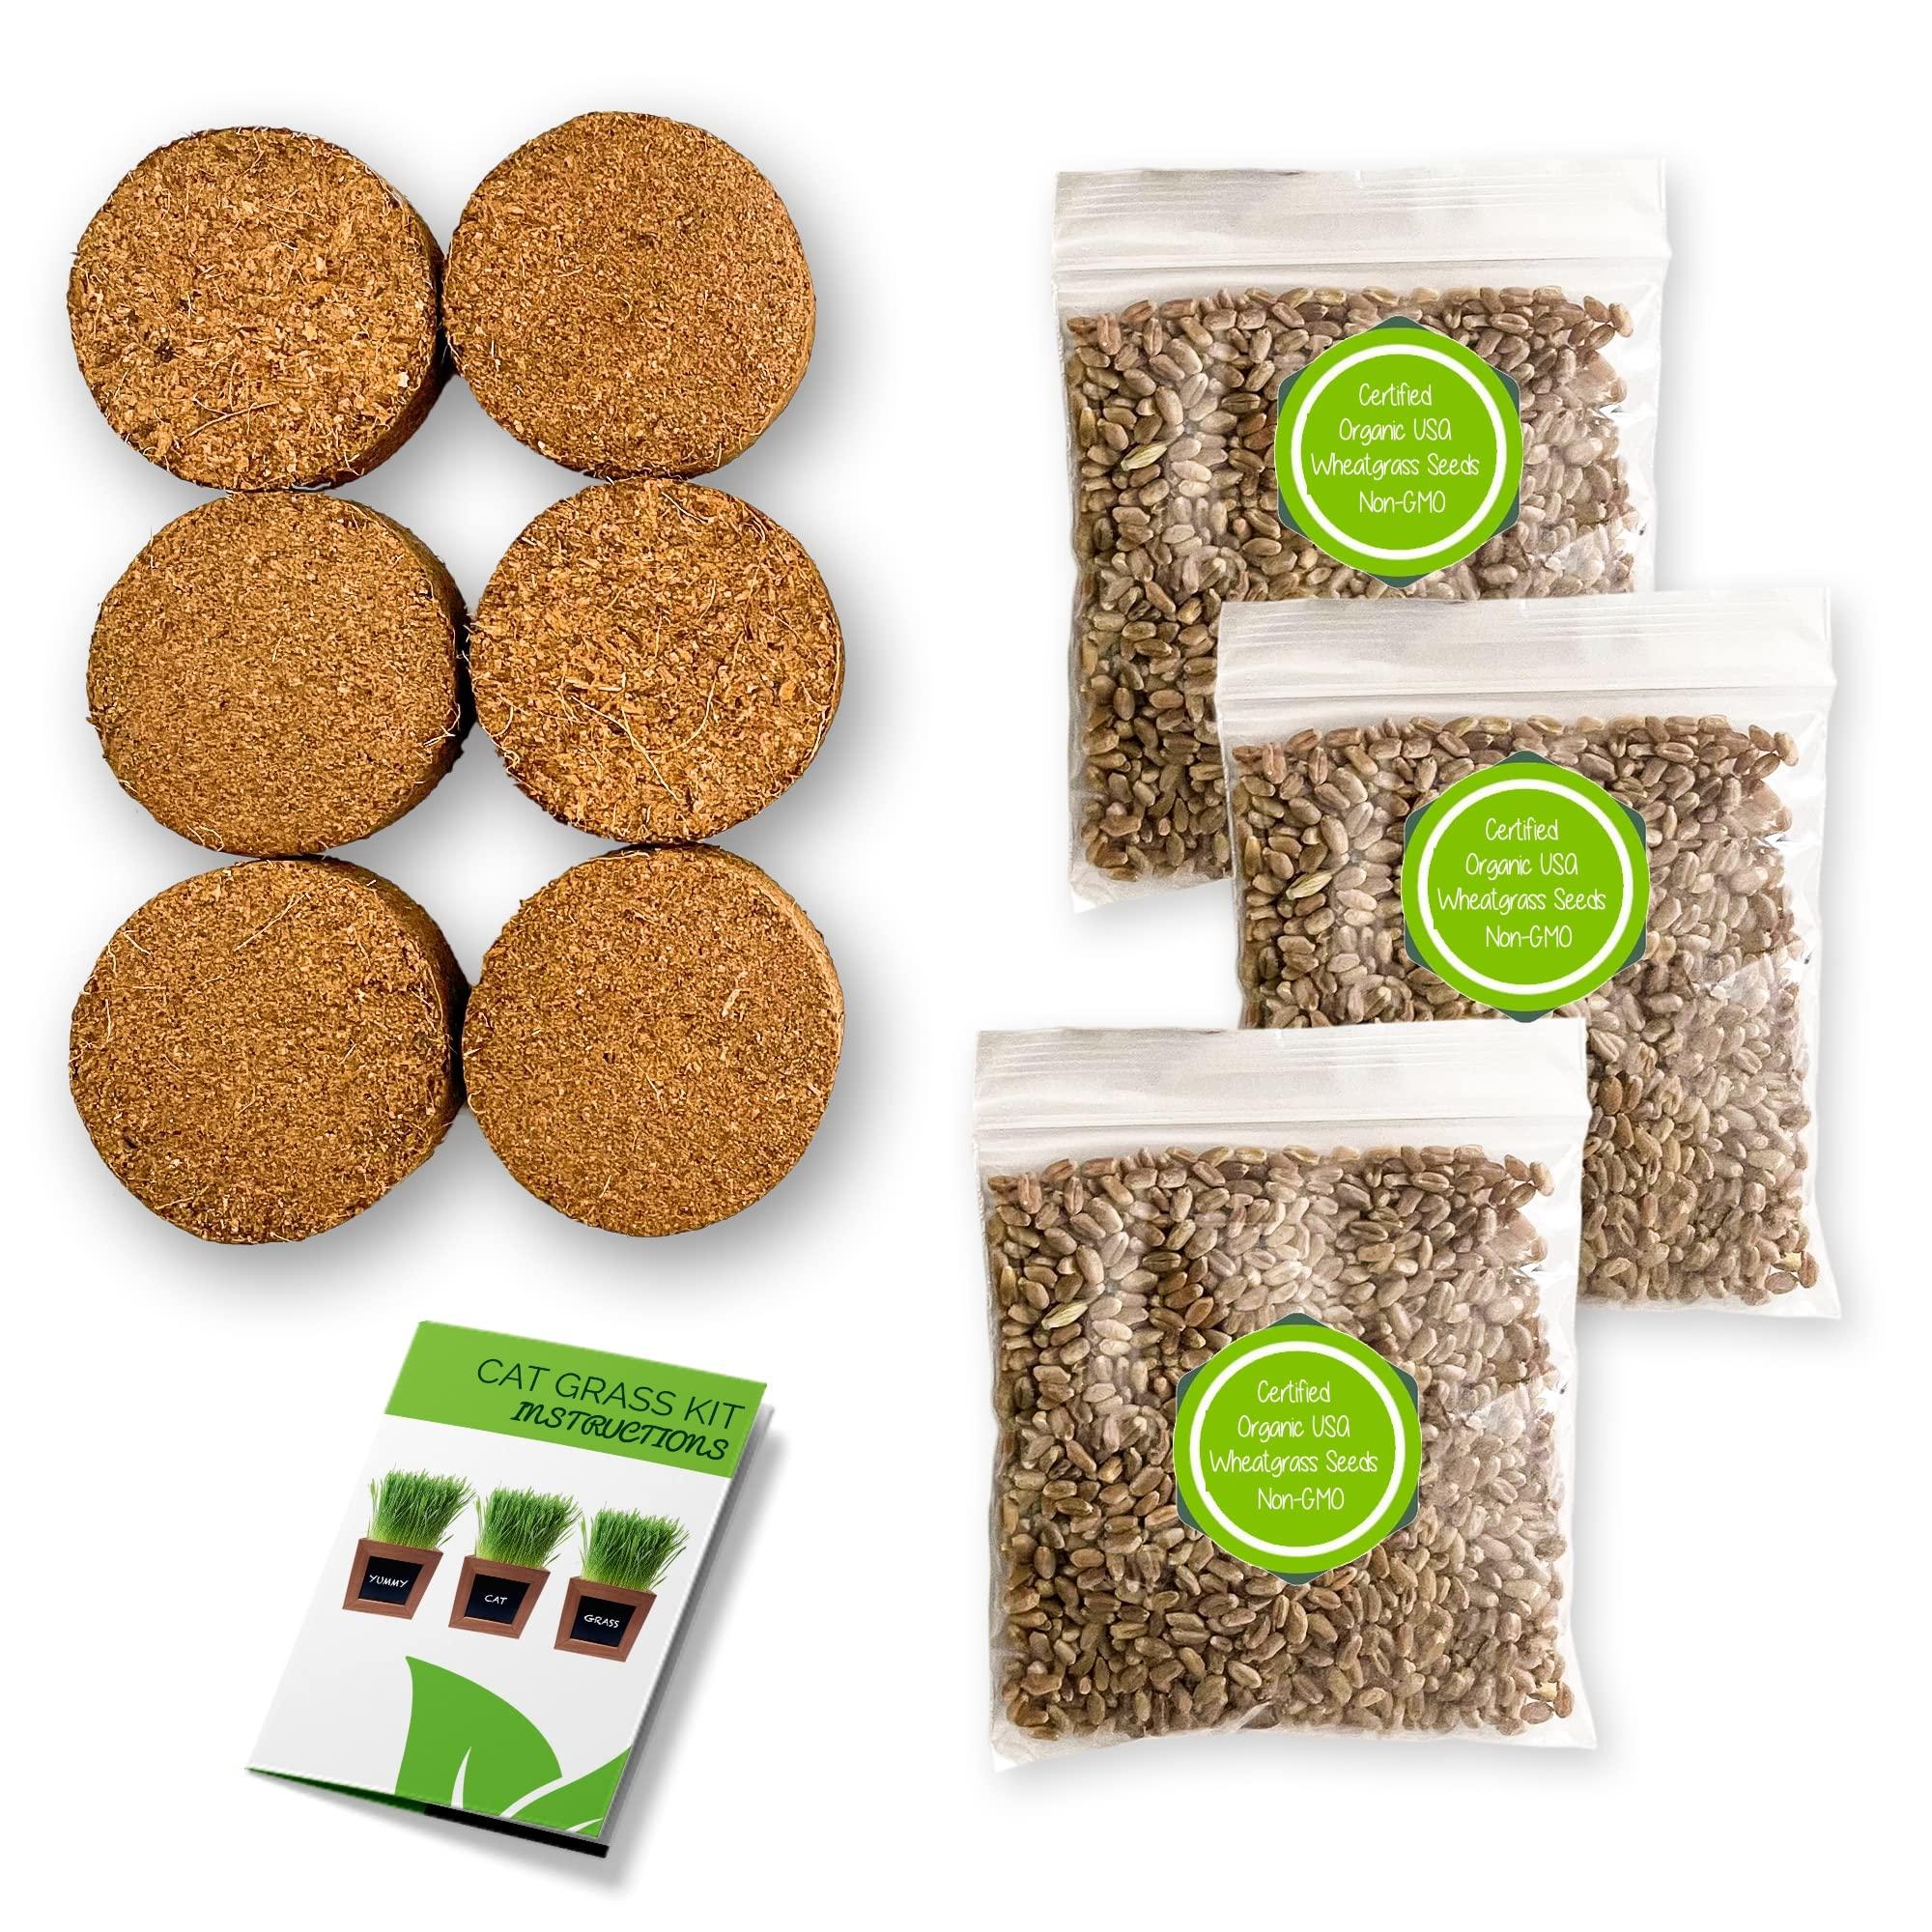 Zestigreens Organic Cat Grass Refill Kit